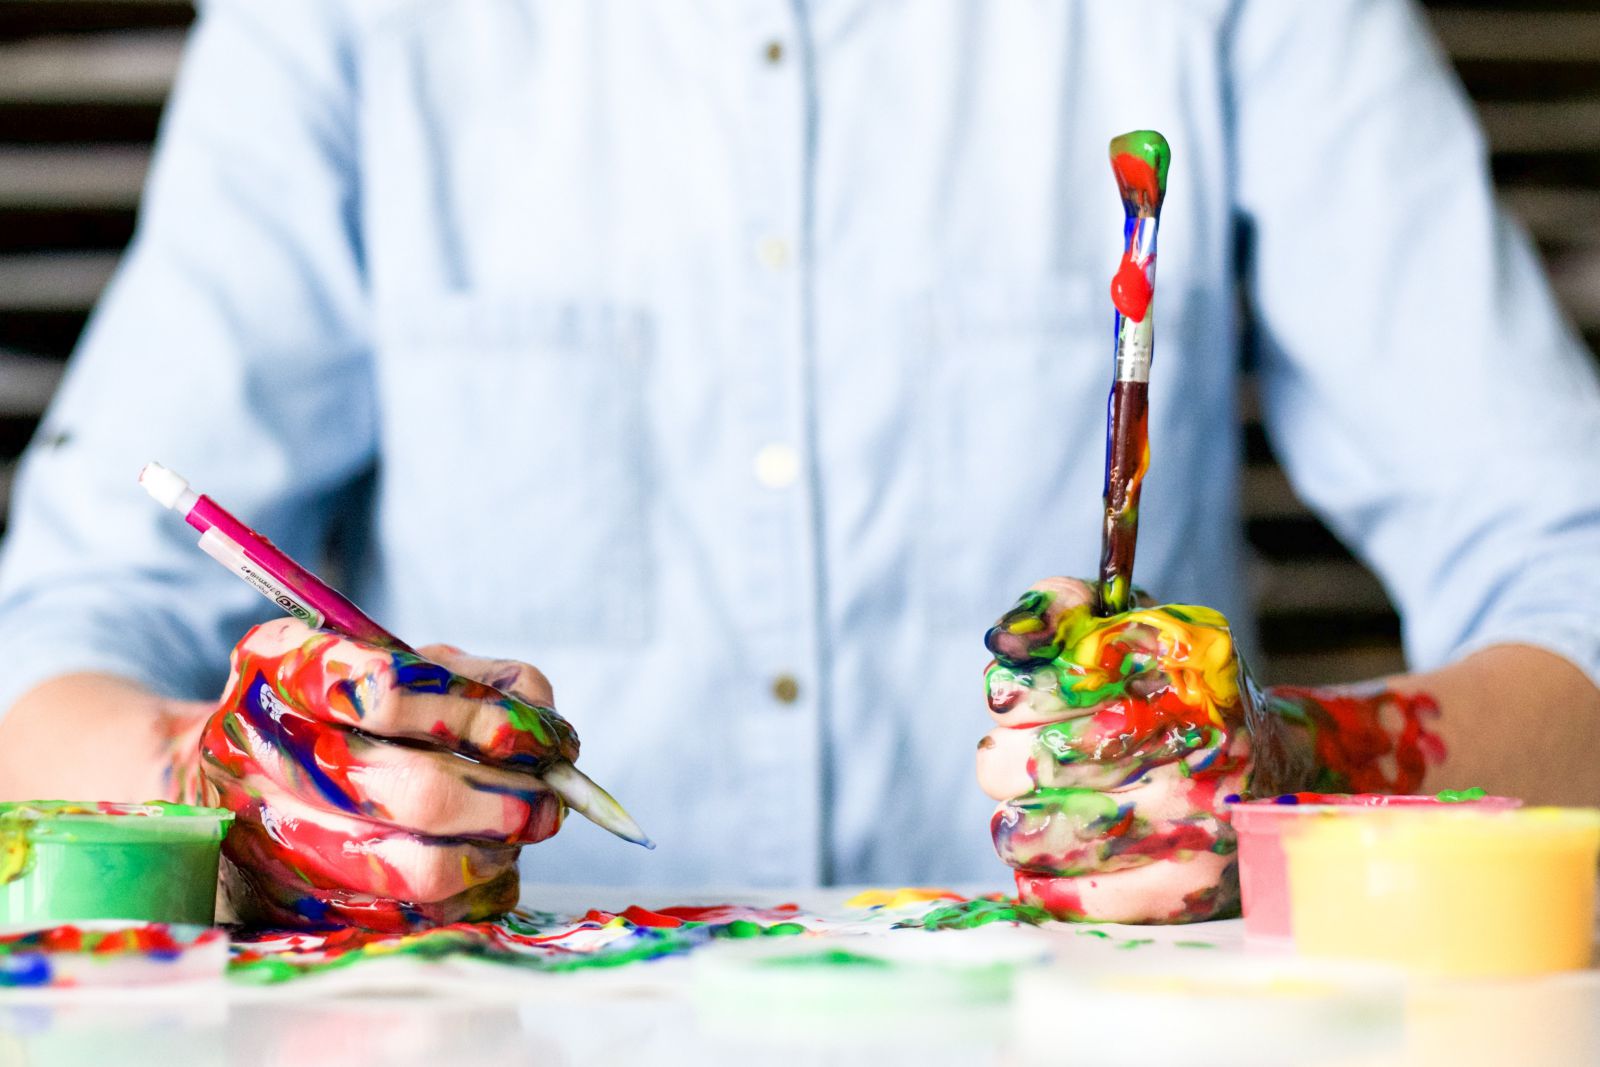 Pessoa segurando pincéis com tintas coloridas em suas mãos